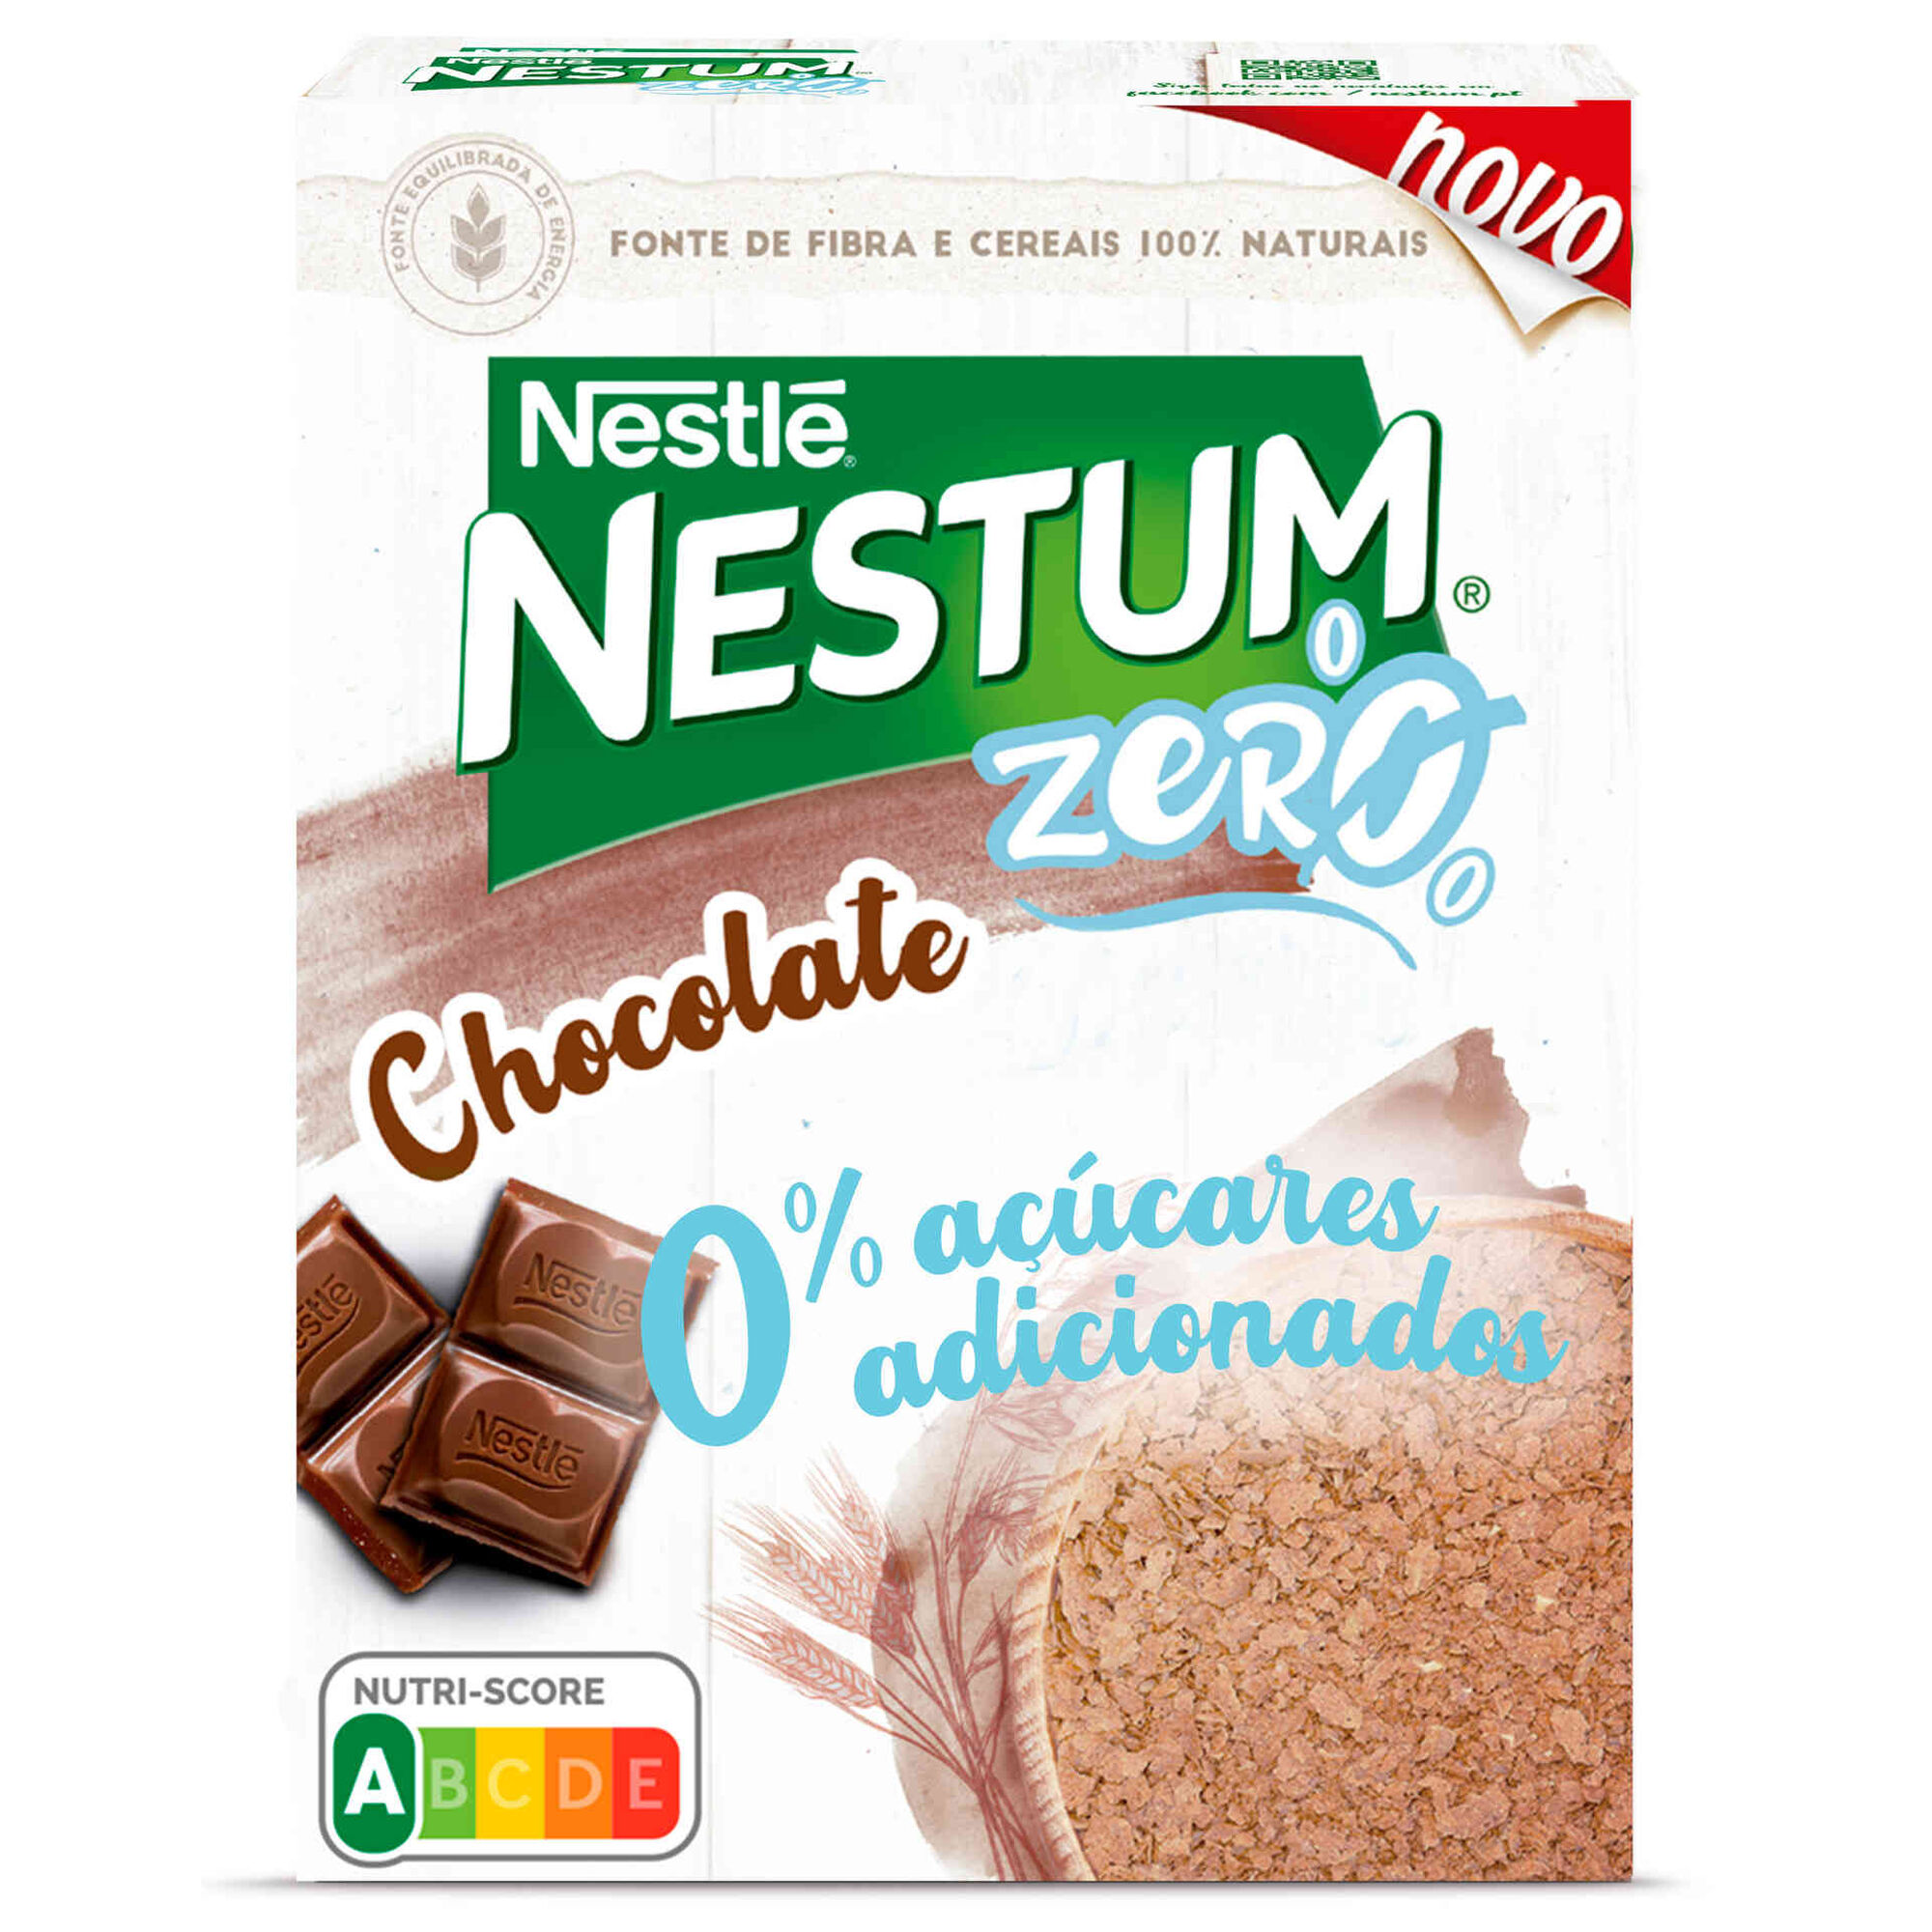 Nestum Chocolate Zero +3A